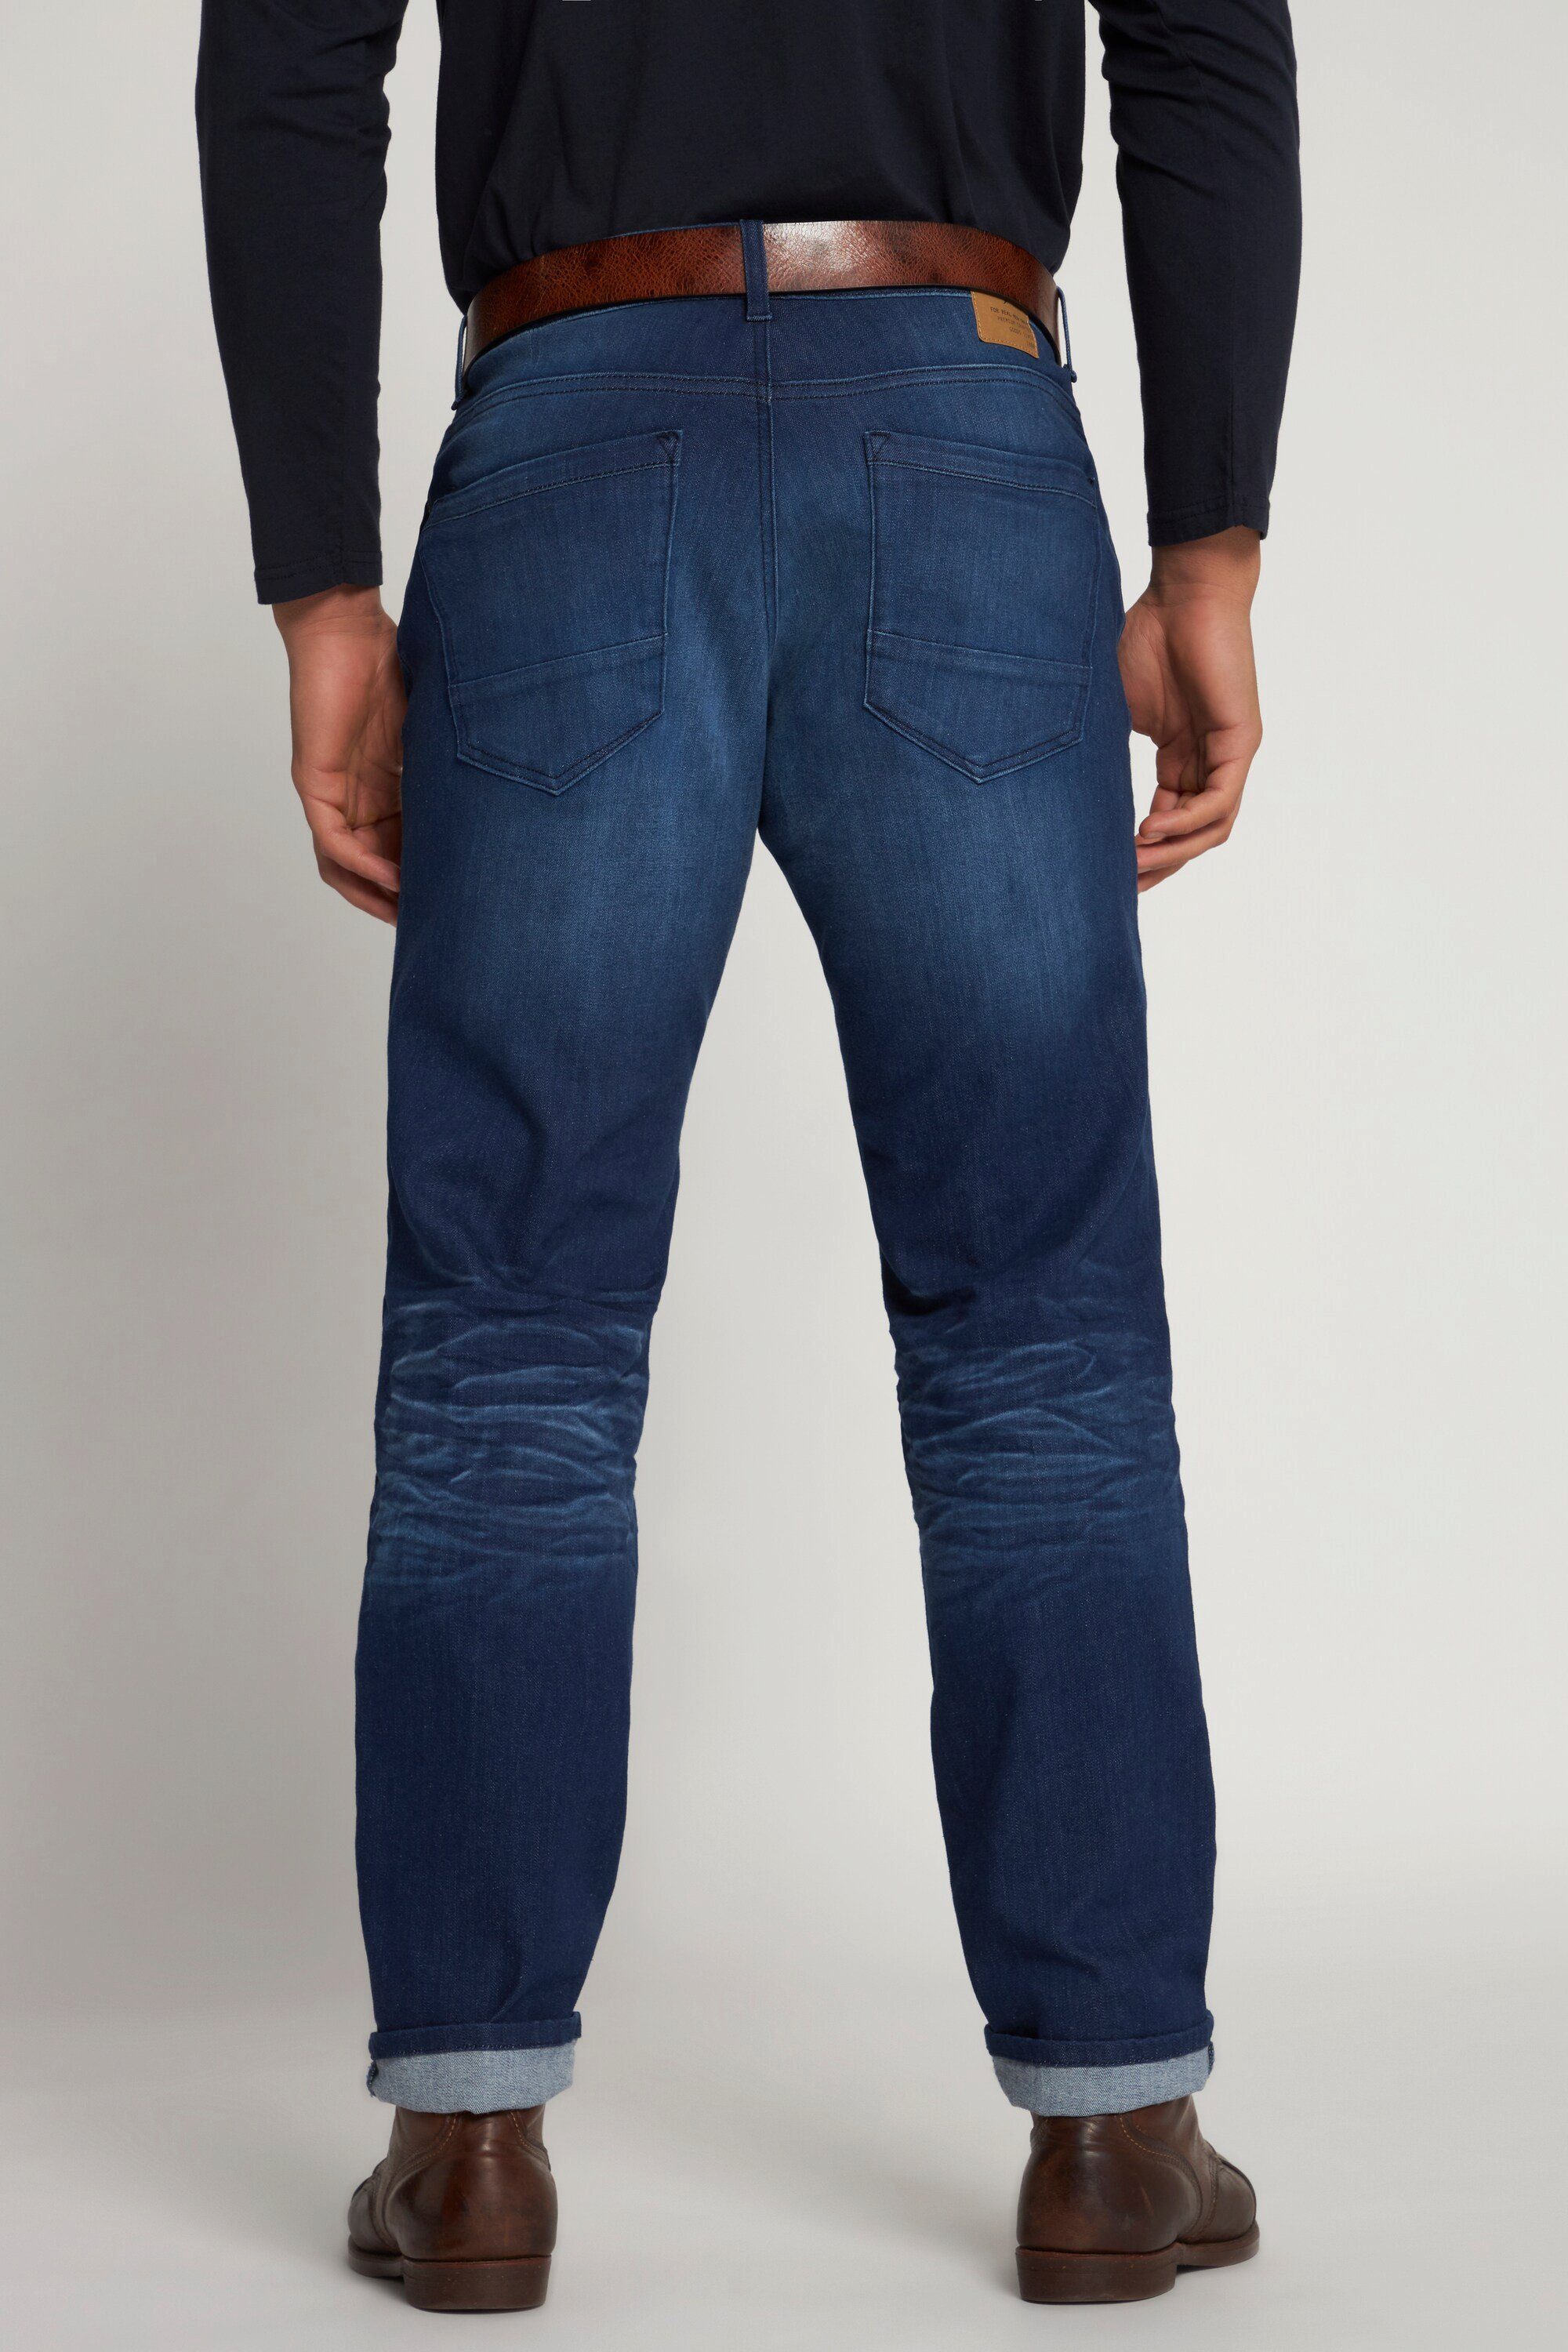 Loose 5-Pocket-Jeans Fit Look Tapered denim Vintage Denim Jeans JP1880 blue